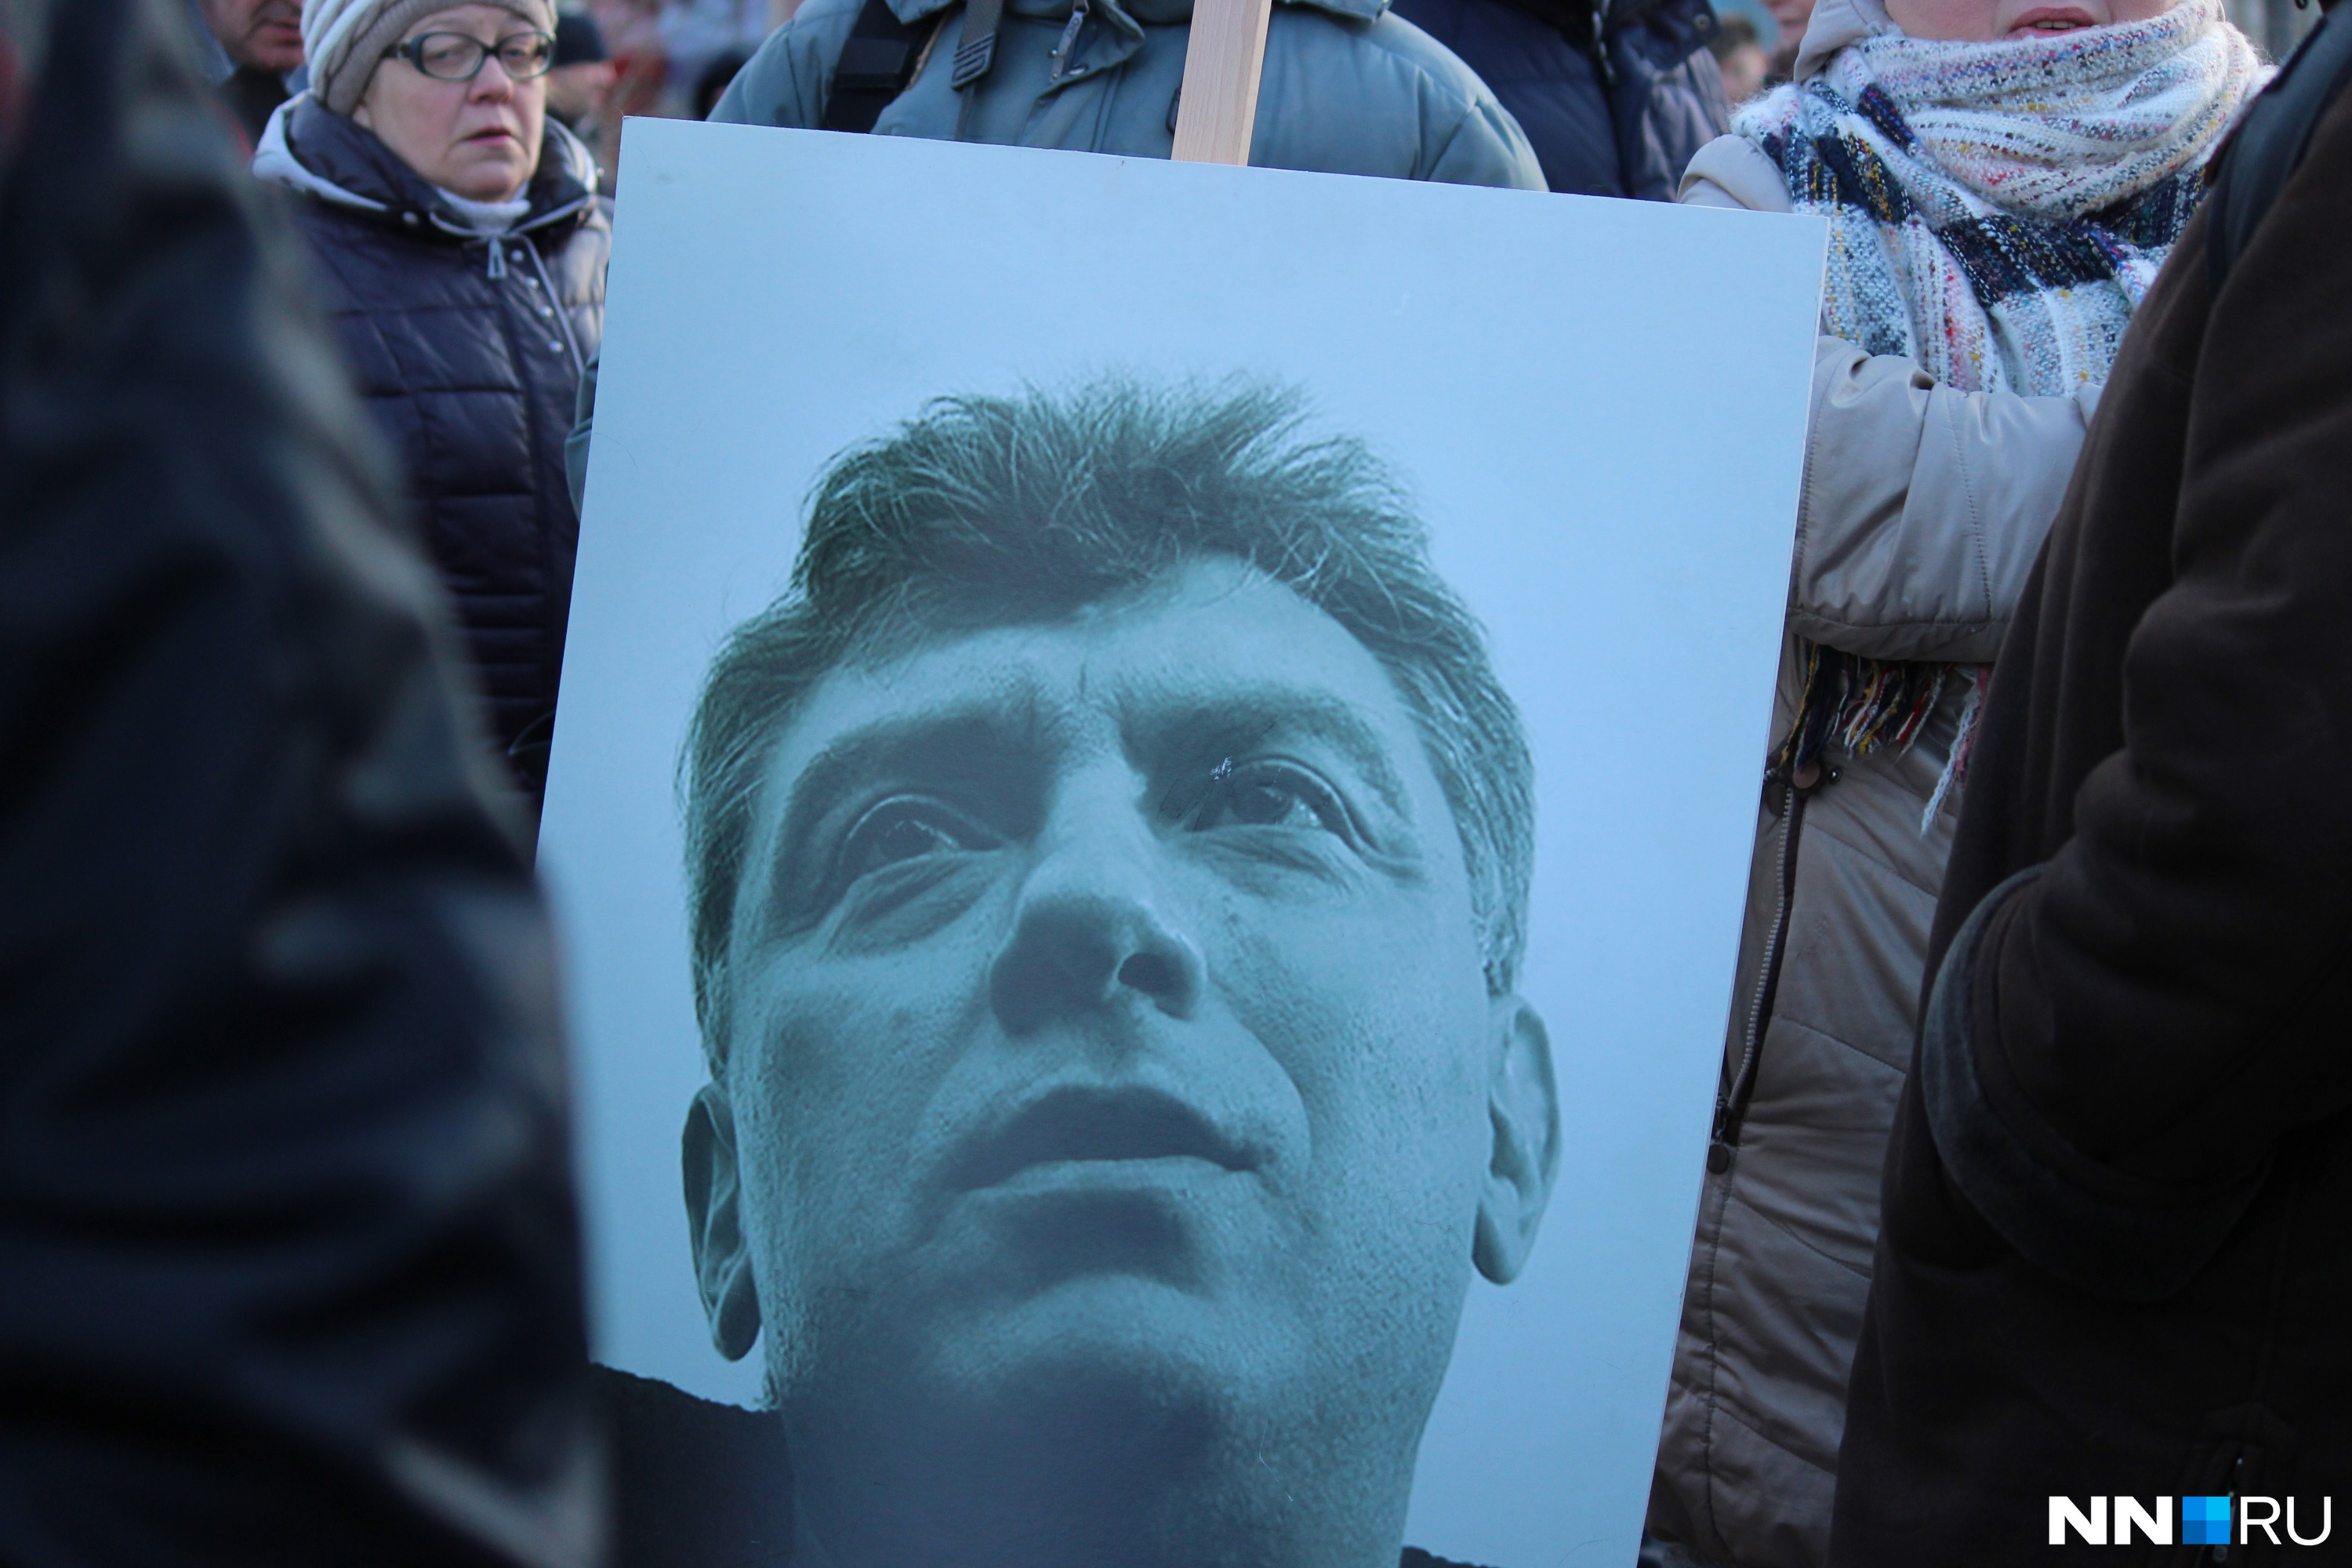 Активисты пришли непосредственно в 15:00 и установили на середине улицы большой портрет Немцова. Вокруг него все и начали собираться